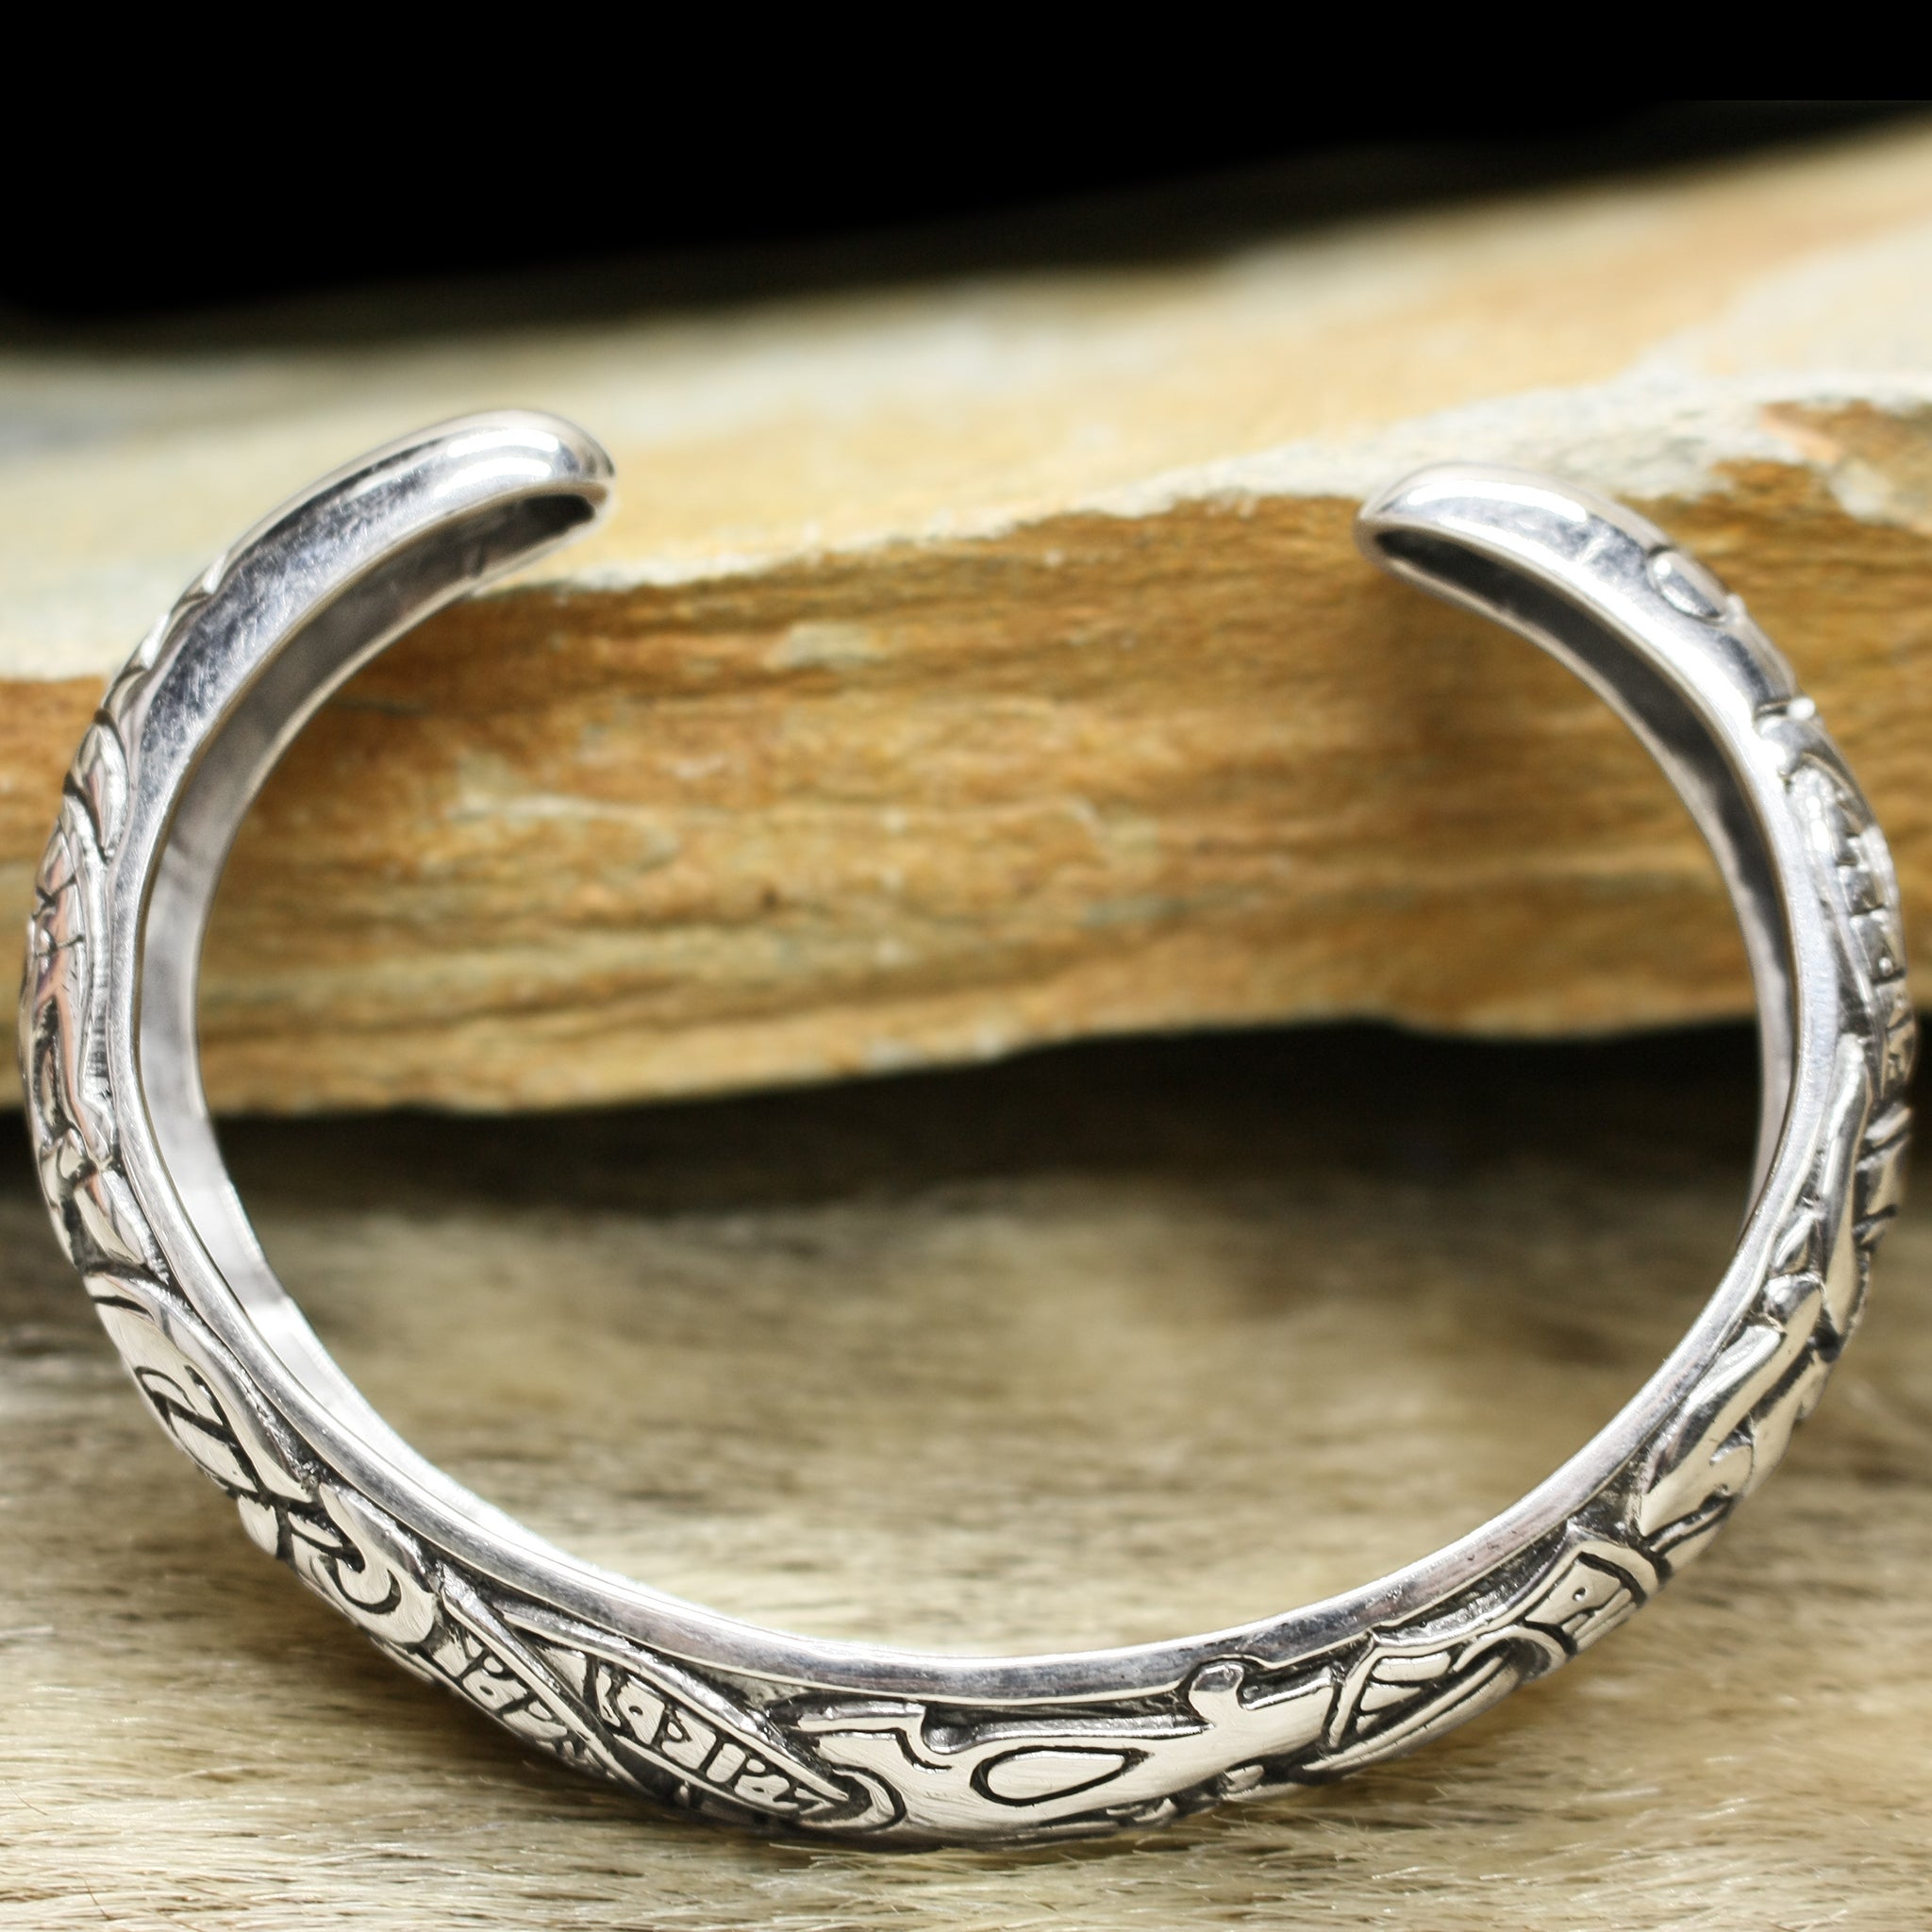 Bear Jewelry Berserker Bear Bracelet - Steel Norse Viking Jewelry - Viking  Warrior